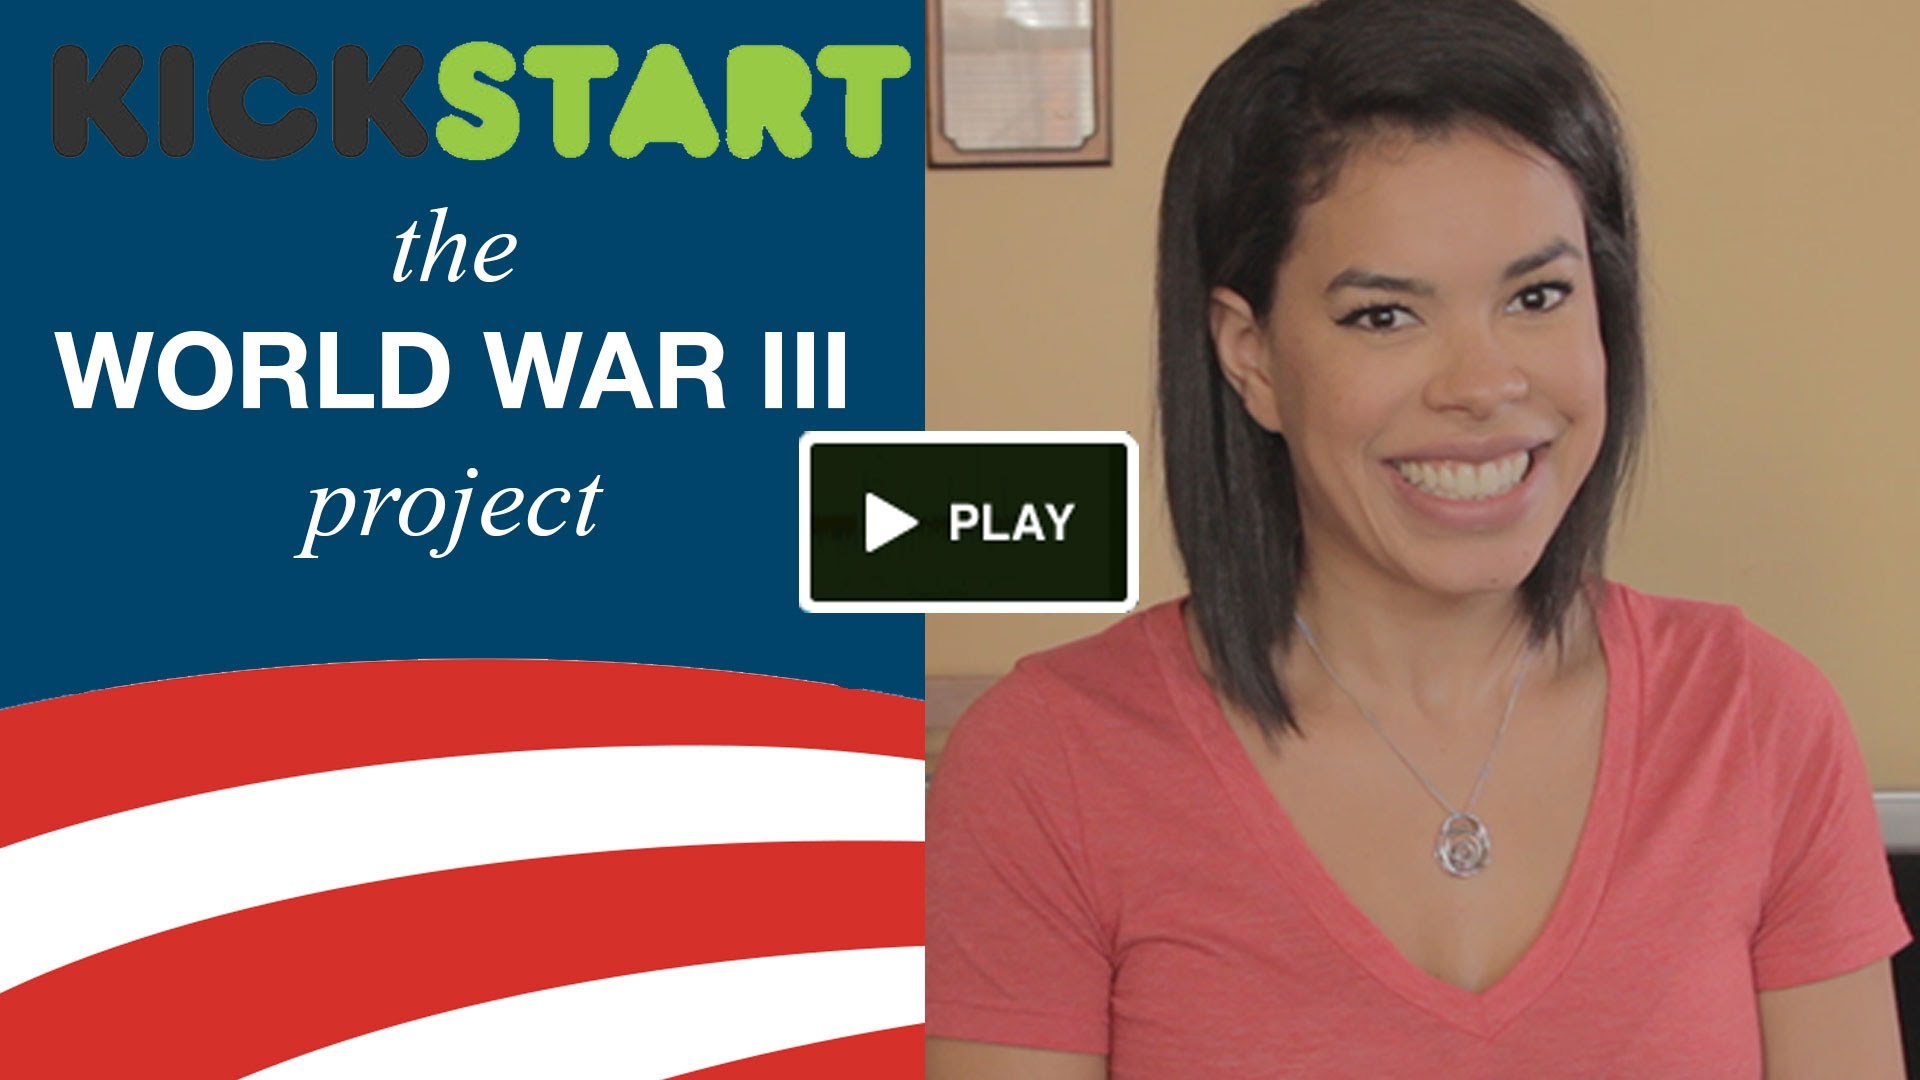 Help Obama Kickstart World War III!